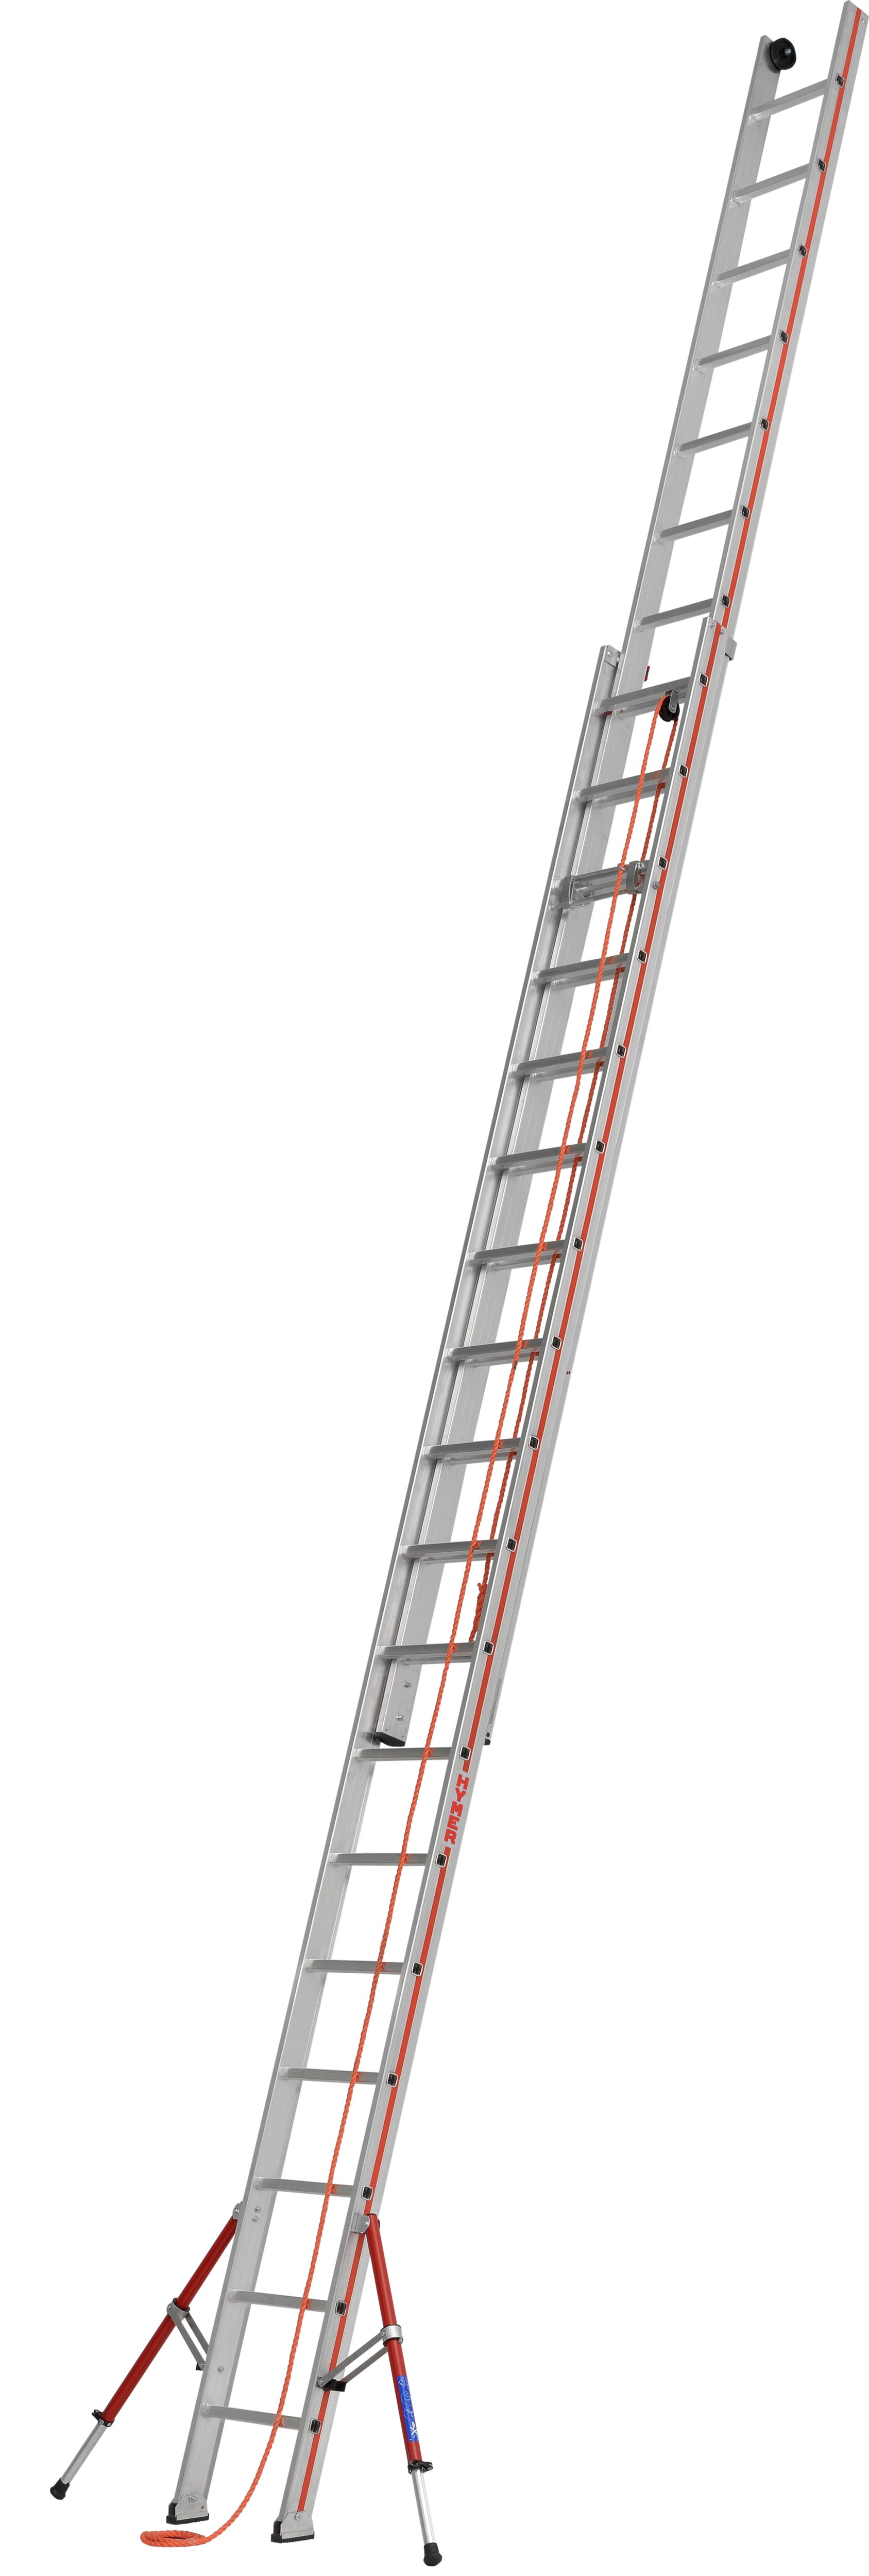 Vorschau: Hymer Seilzugleiter 2-teilig SC 60 Alu 2x18 Sprossen Leiter mit ausklappbaren Auslegern - Profiprogramm (HY-605136) Bild-01